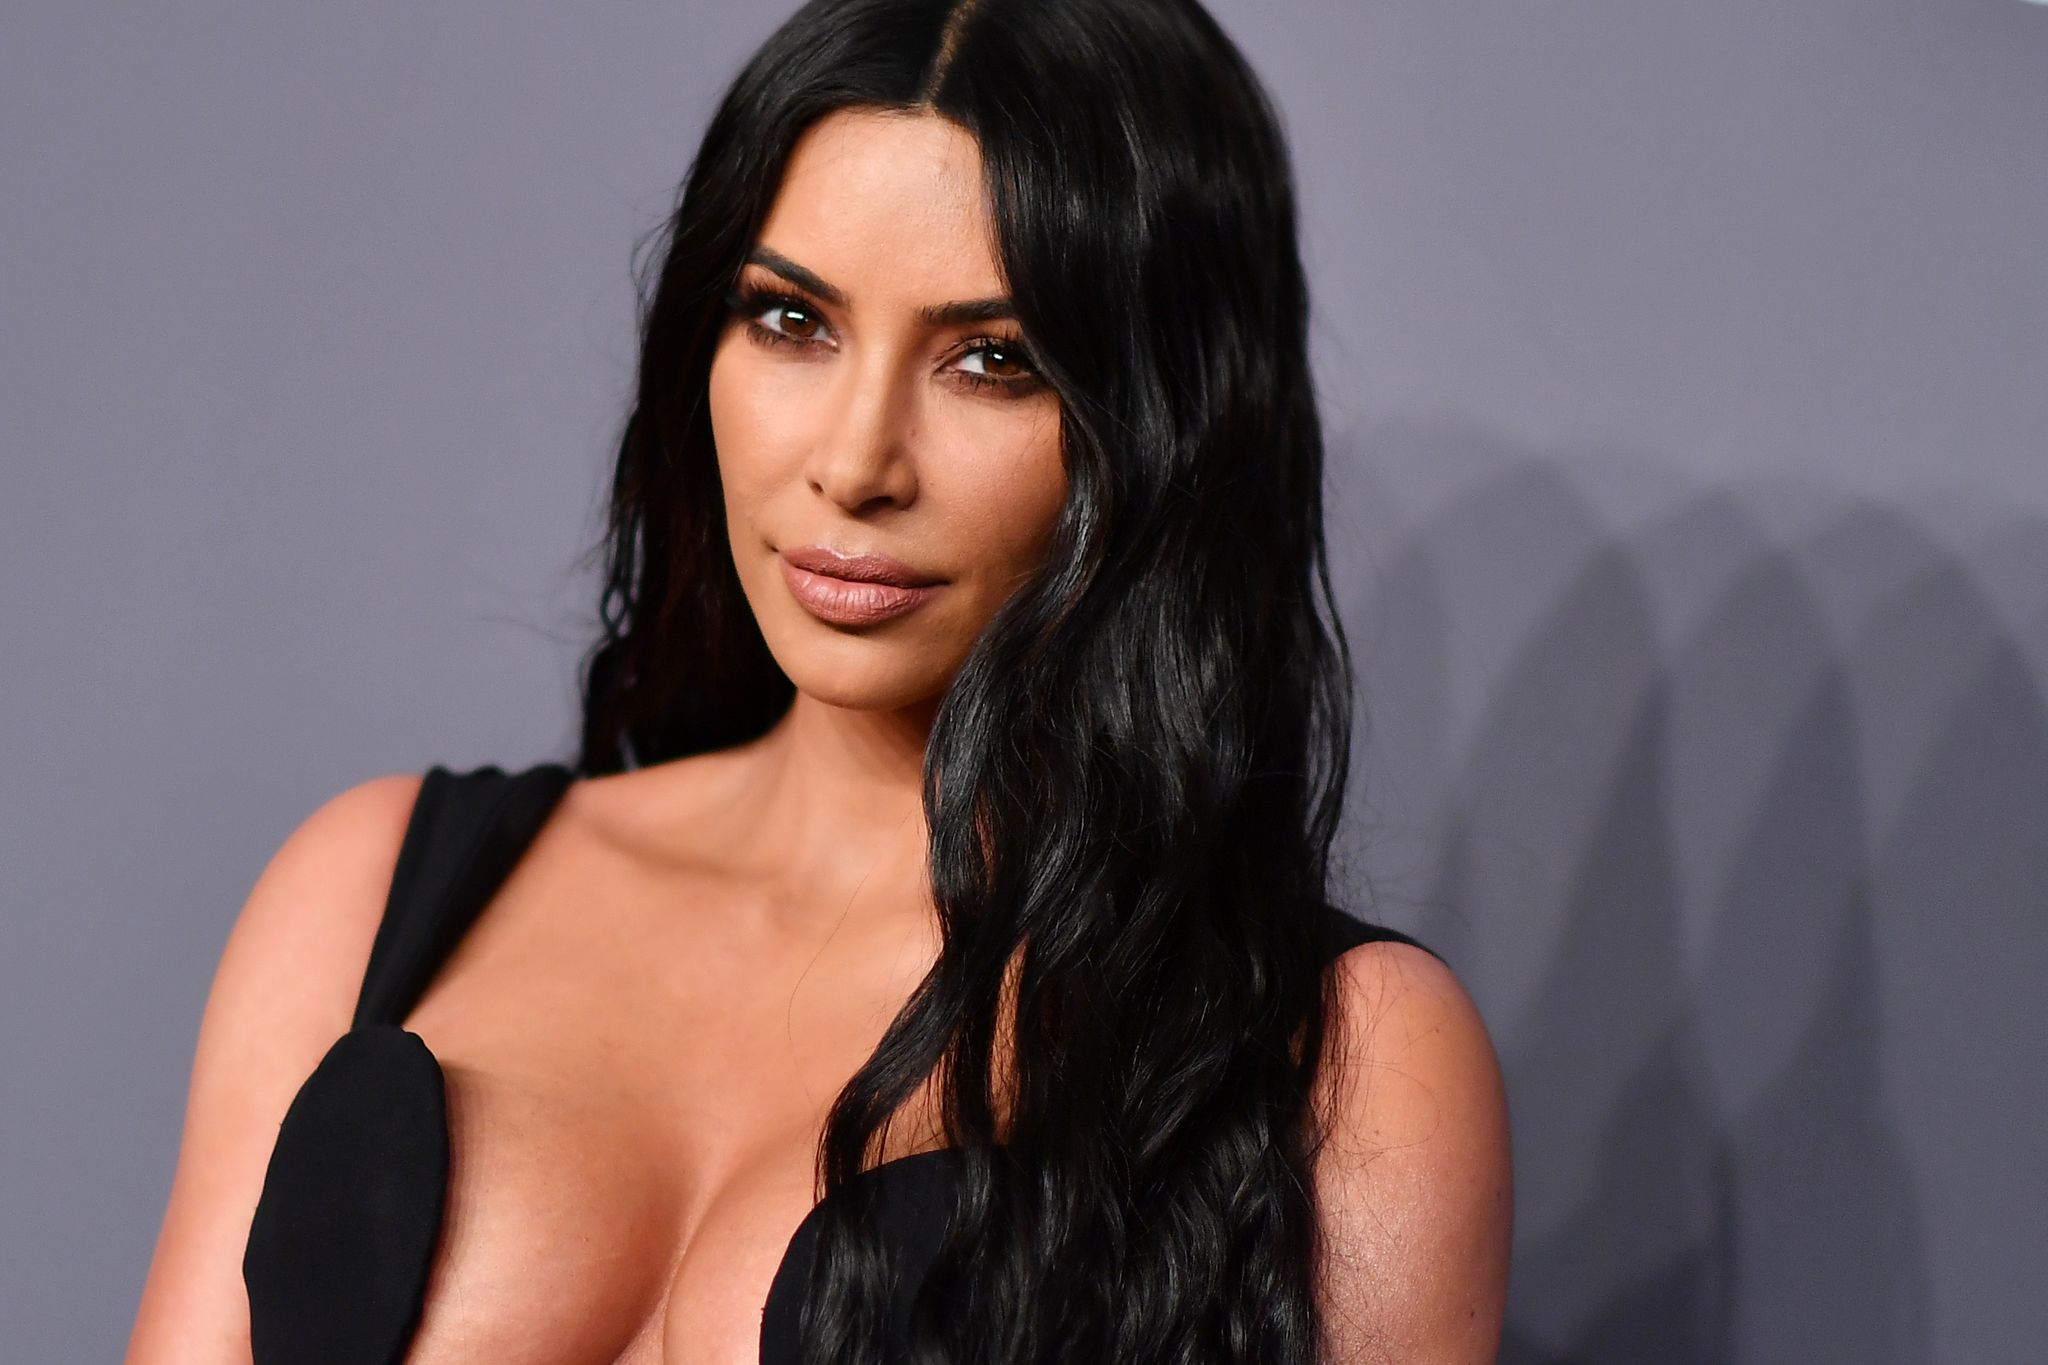 Kim Kardashian Upskirt Nude - Kim Kardashian opens up about being upskirted by paparazzi